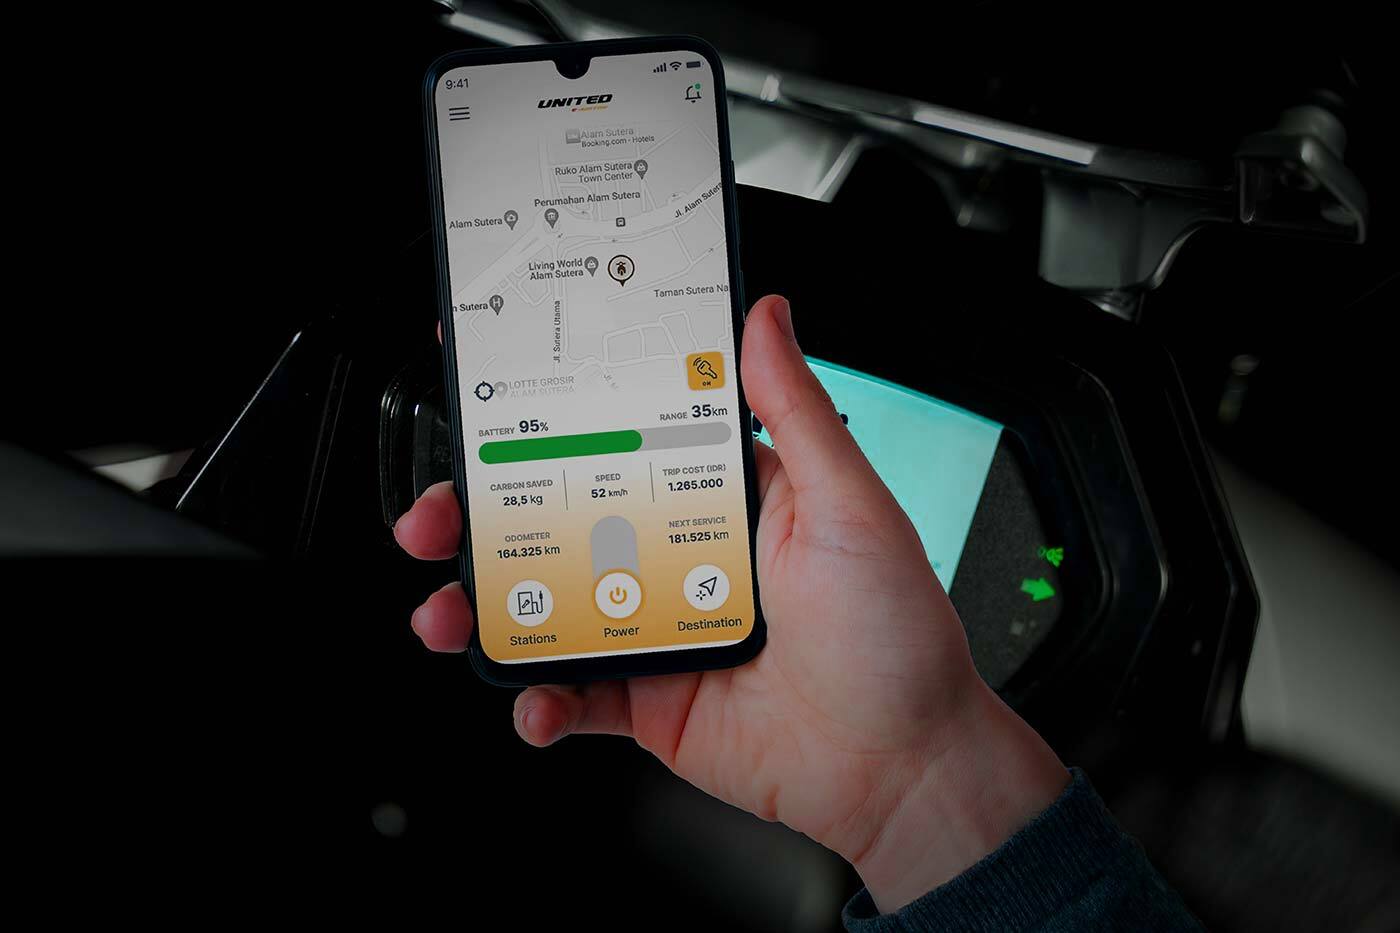 Jangan Khawatir! Fitur GPS Pada Motor Listrik Bisa Digunakan Untuk Memantau Pacar Meski LDR 